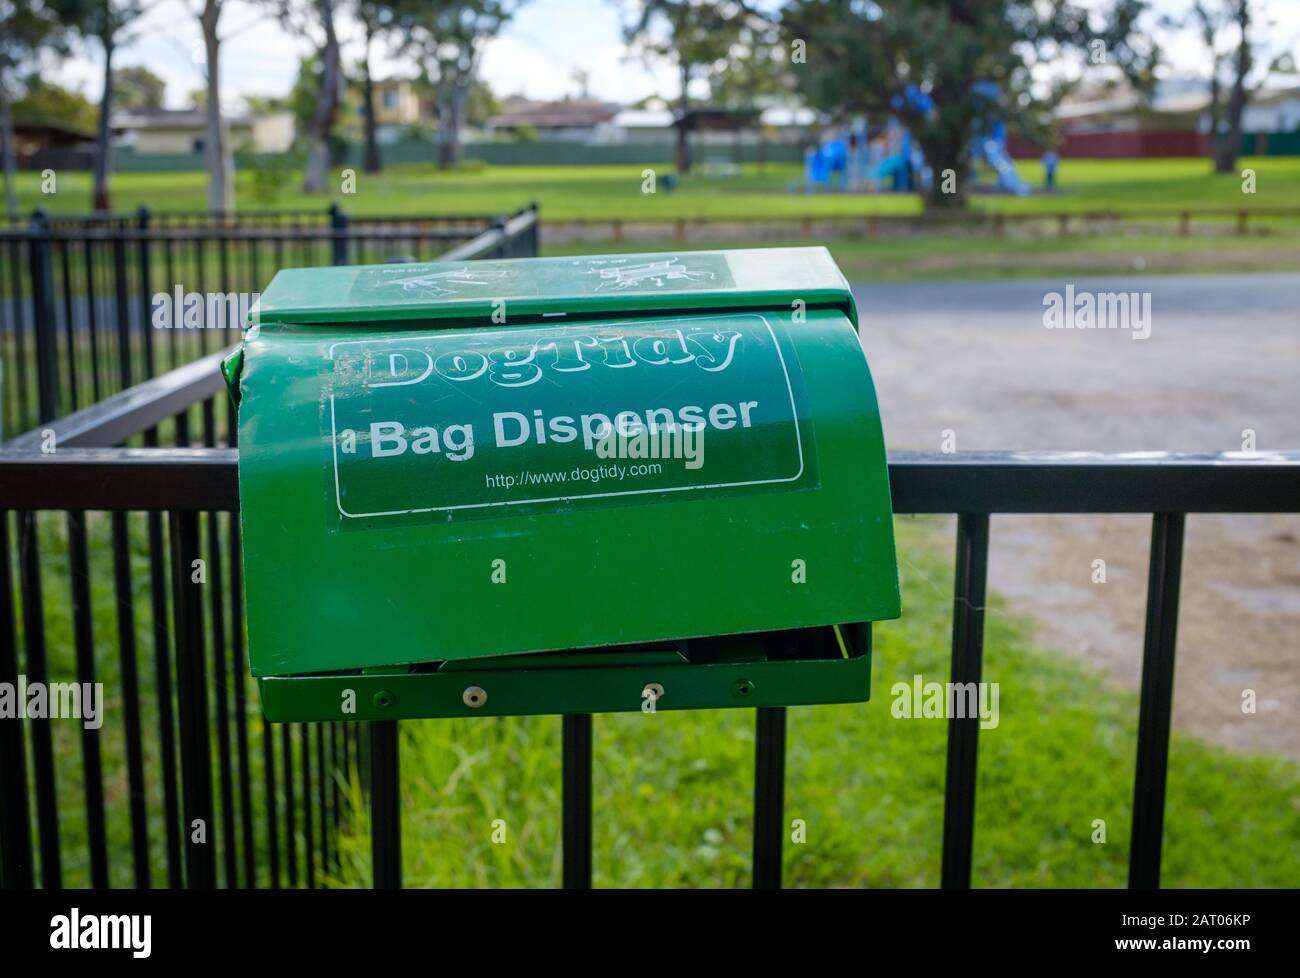 Dogtidy Bag Spender, leer und beschädigt, auf Hundeparkgeländer in NSW, Australien Stockfoto